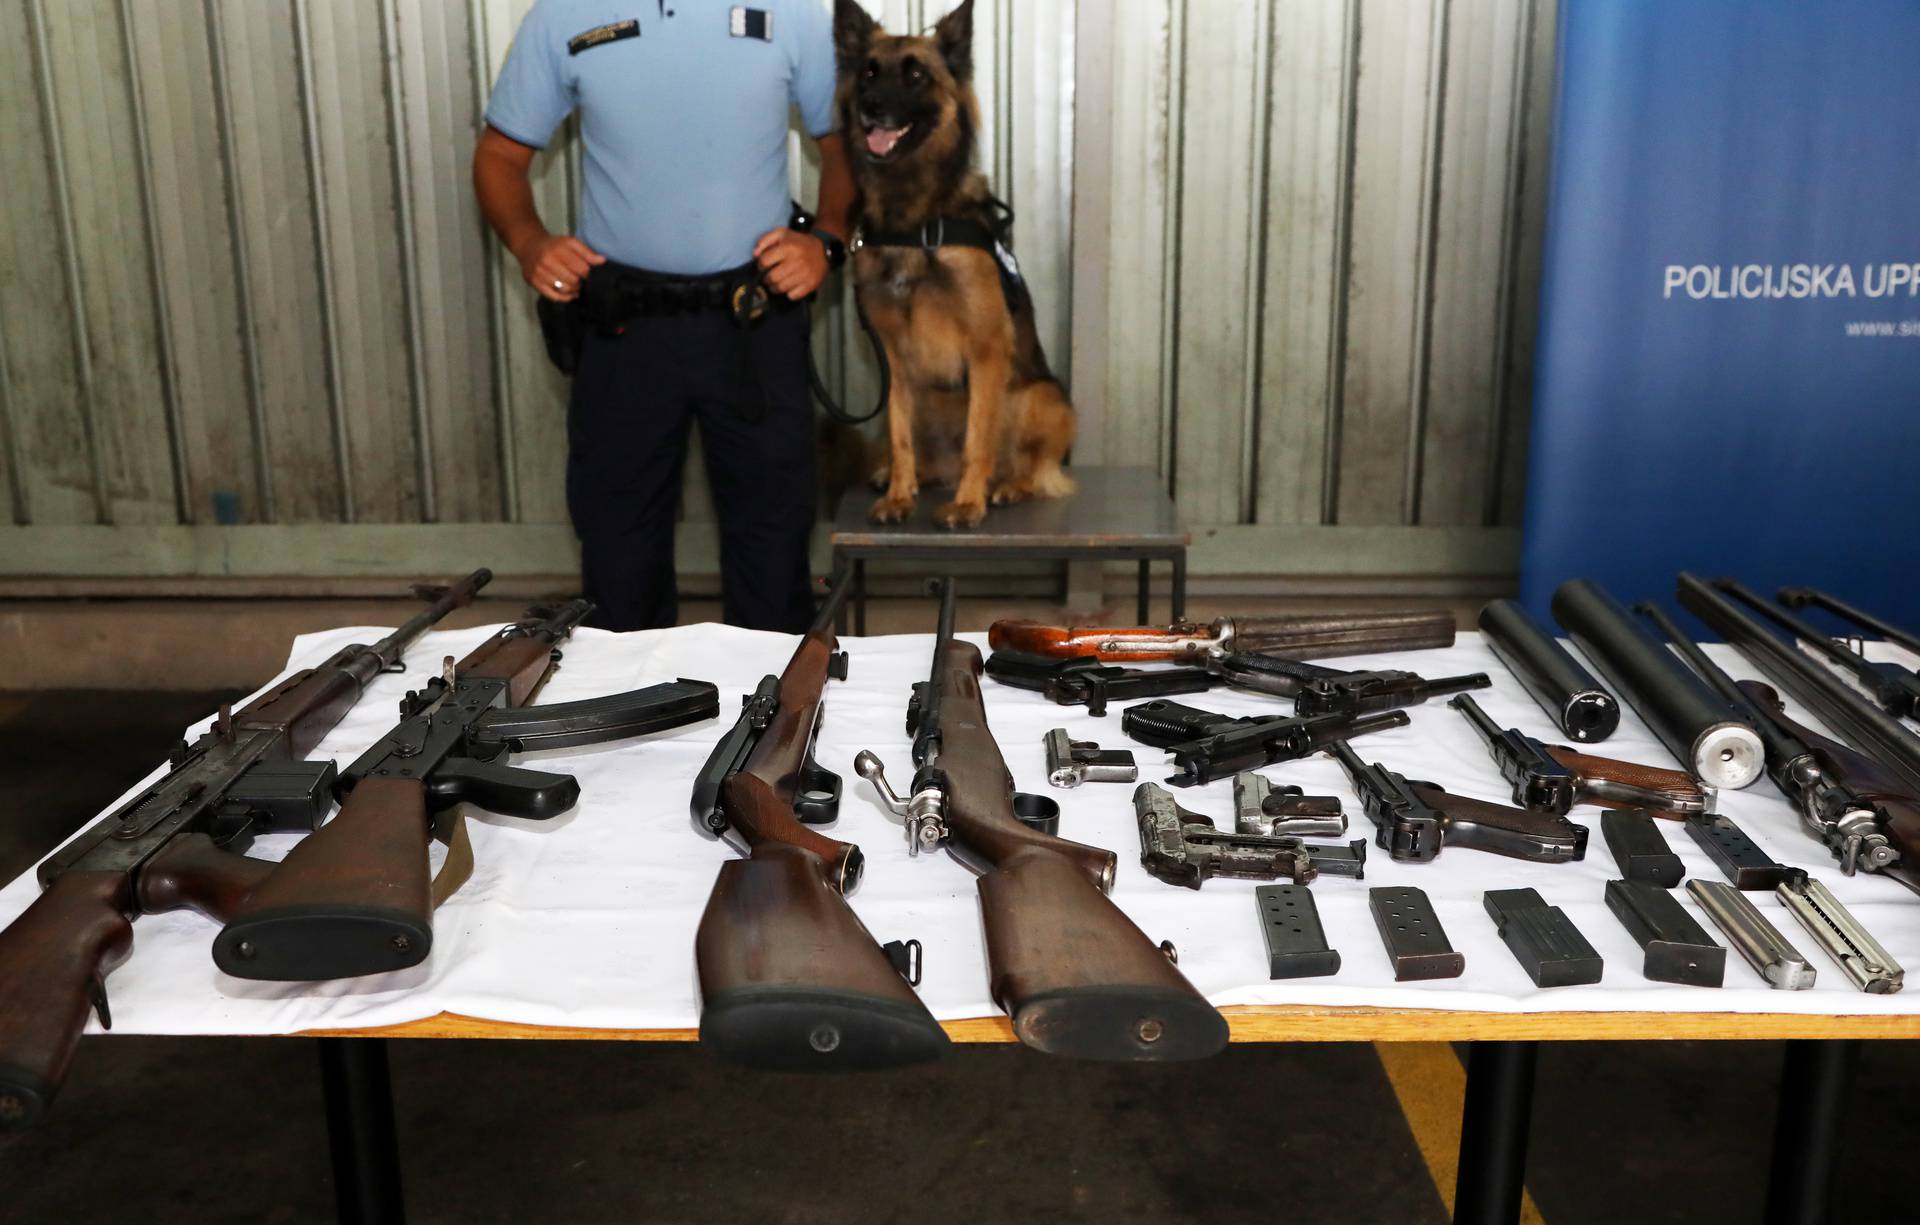 Pao sisački Rambo: Kujica Lisa je u njegovim kućama nanjušila raketni bacač, puške, pištolje...